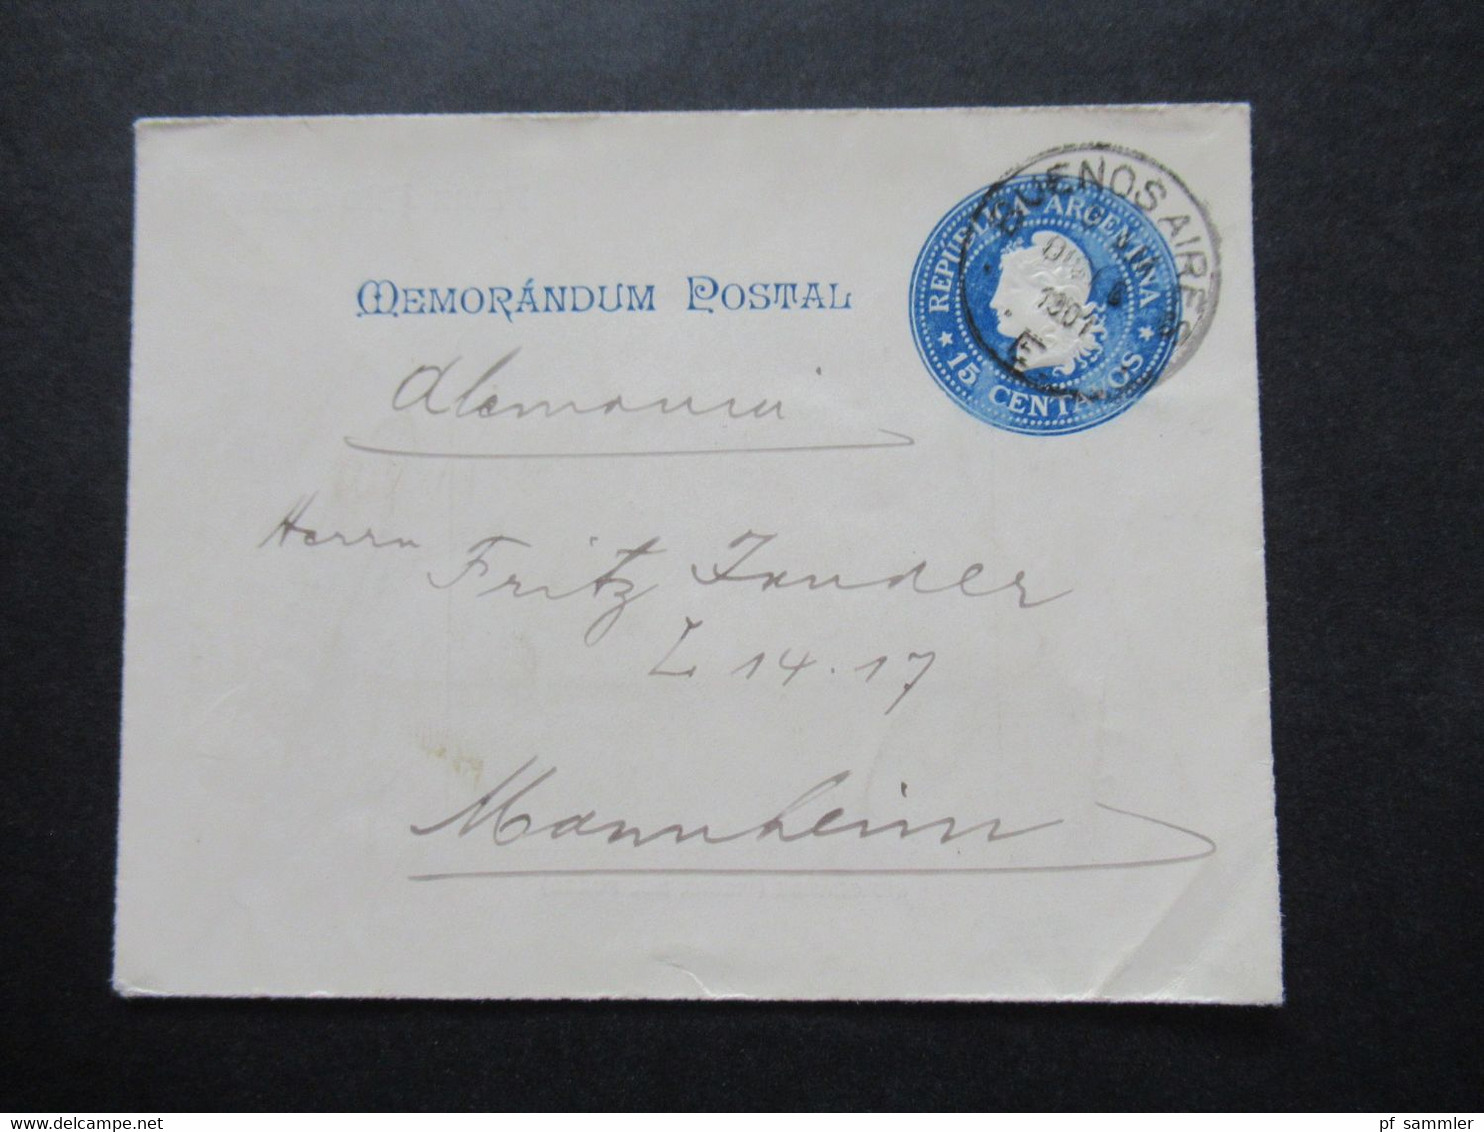 Argentinien 1901 Memorandum Postal Ganzsachen Umschlag Nach Mannheim Innen: Rio Grande (Tierra Del Fuego) - Ganzsachen